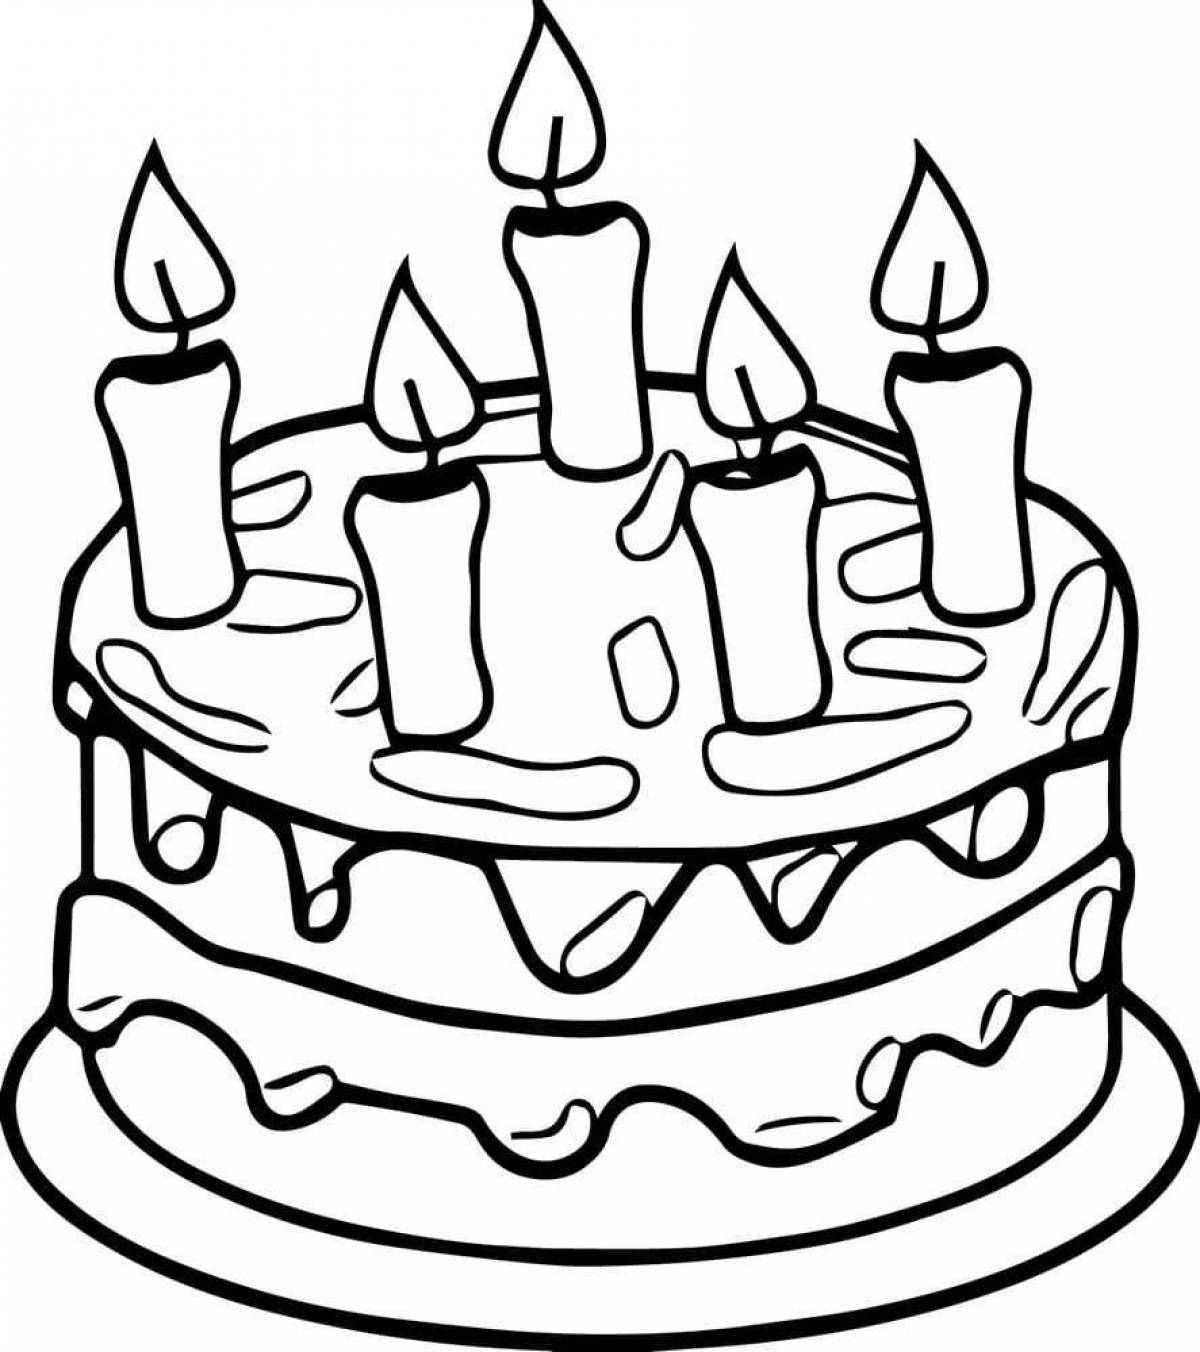 Раскраска веселый торт ко дню рождения